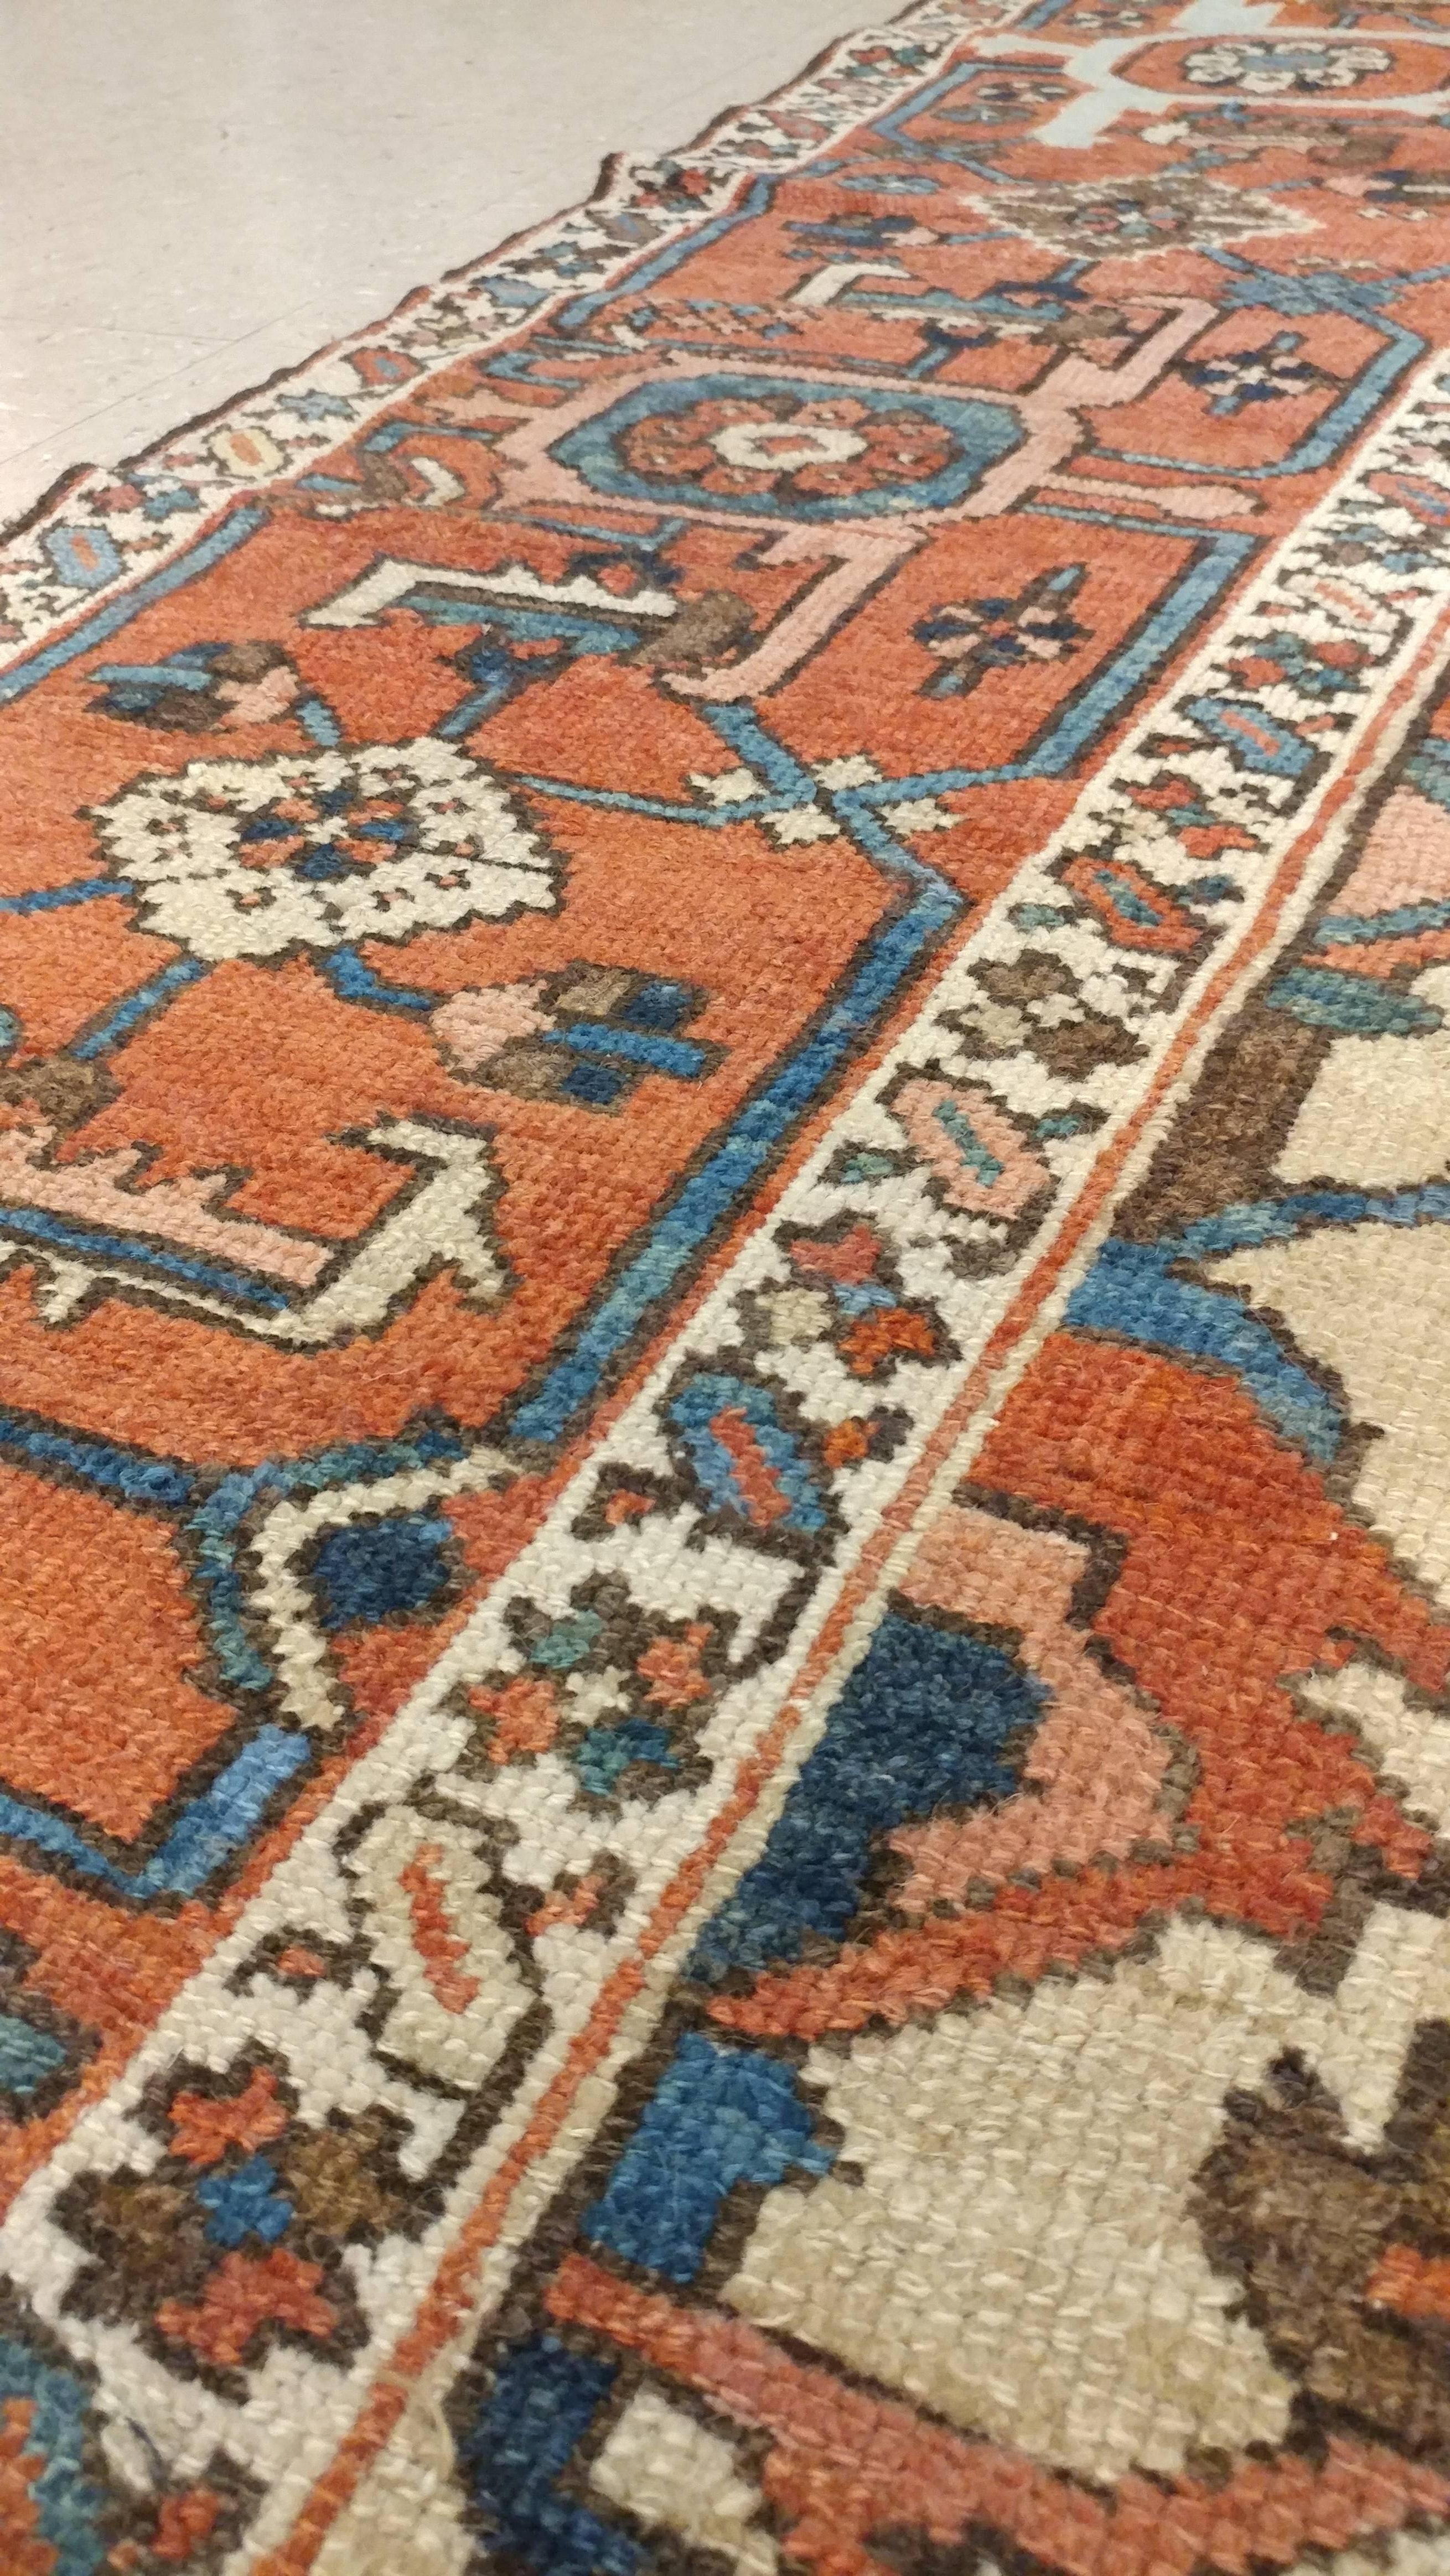 Antique Persian Handmade Wool Oriental Serapi Carpet, Rust, Gold, Light Blue 3